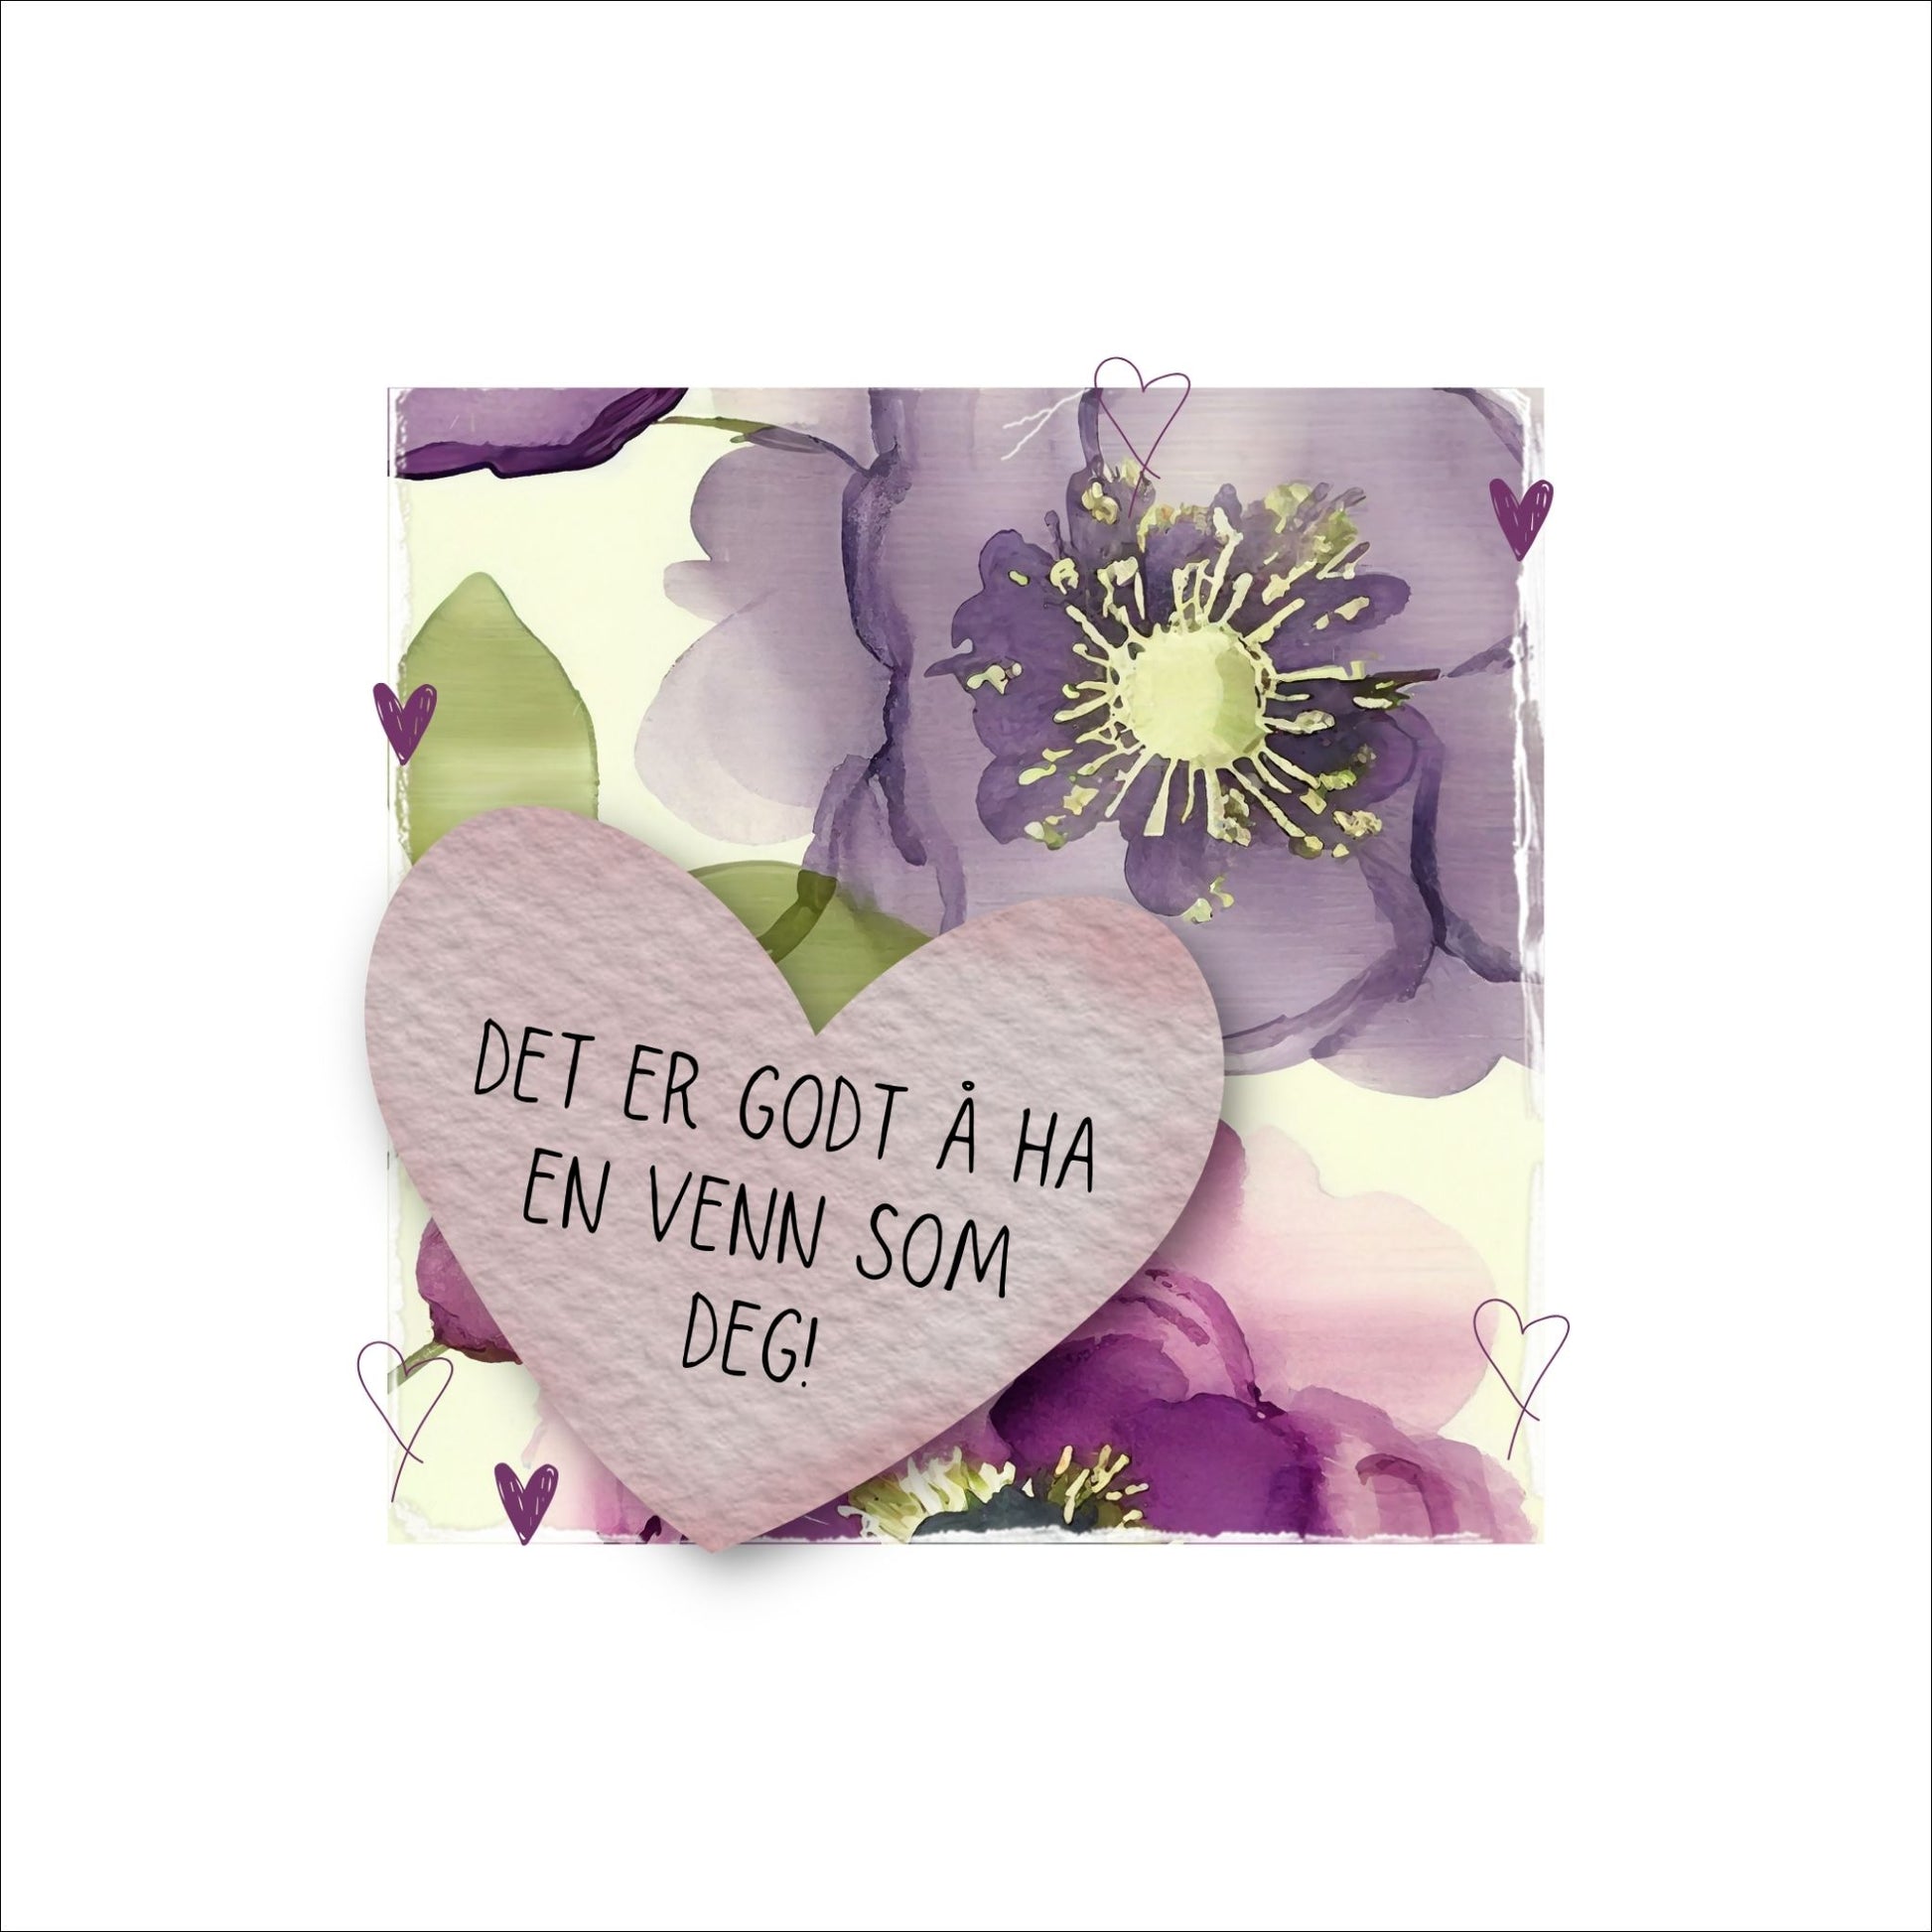 Go'ord plakat med et lilla hjerte med teksten "Det er godt å ha en venn som deg" på en bakgrunn med blomstermotiv i lilla, burgunder og grønt. Hvit kant på 4 cm. som fremhever og gir bildet dybde.